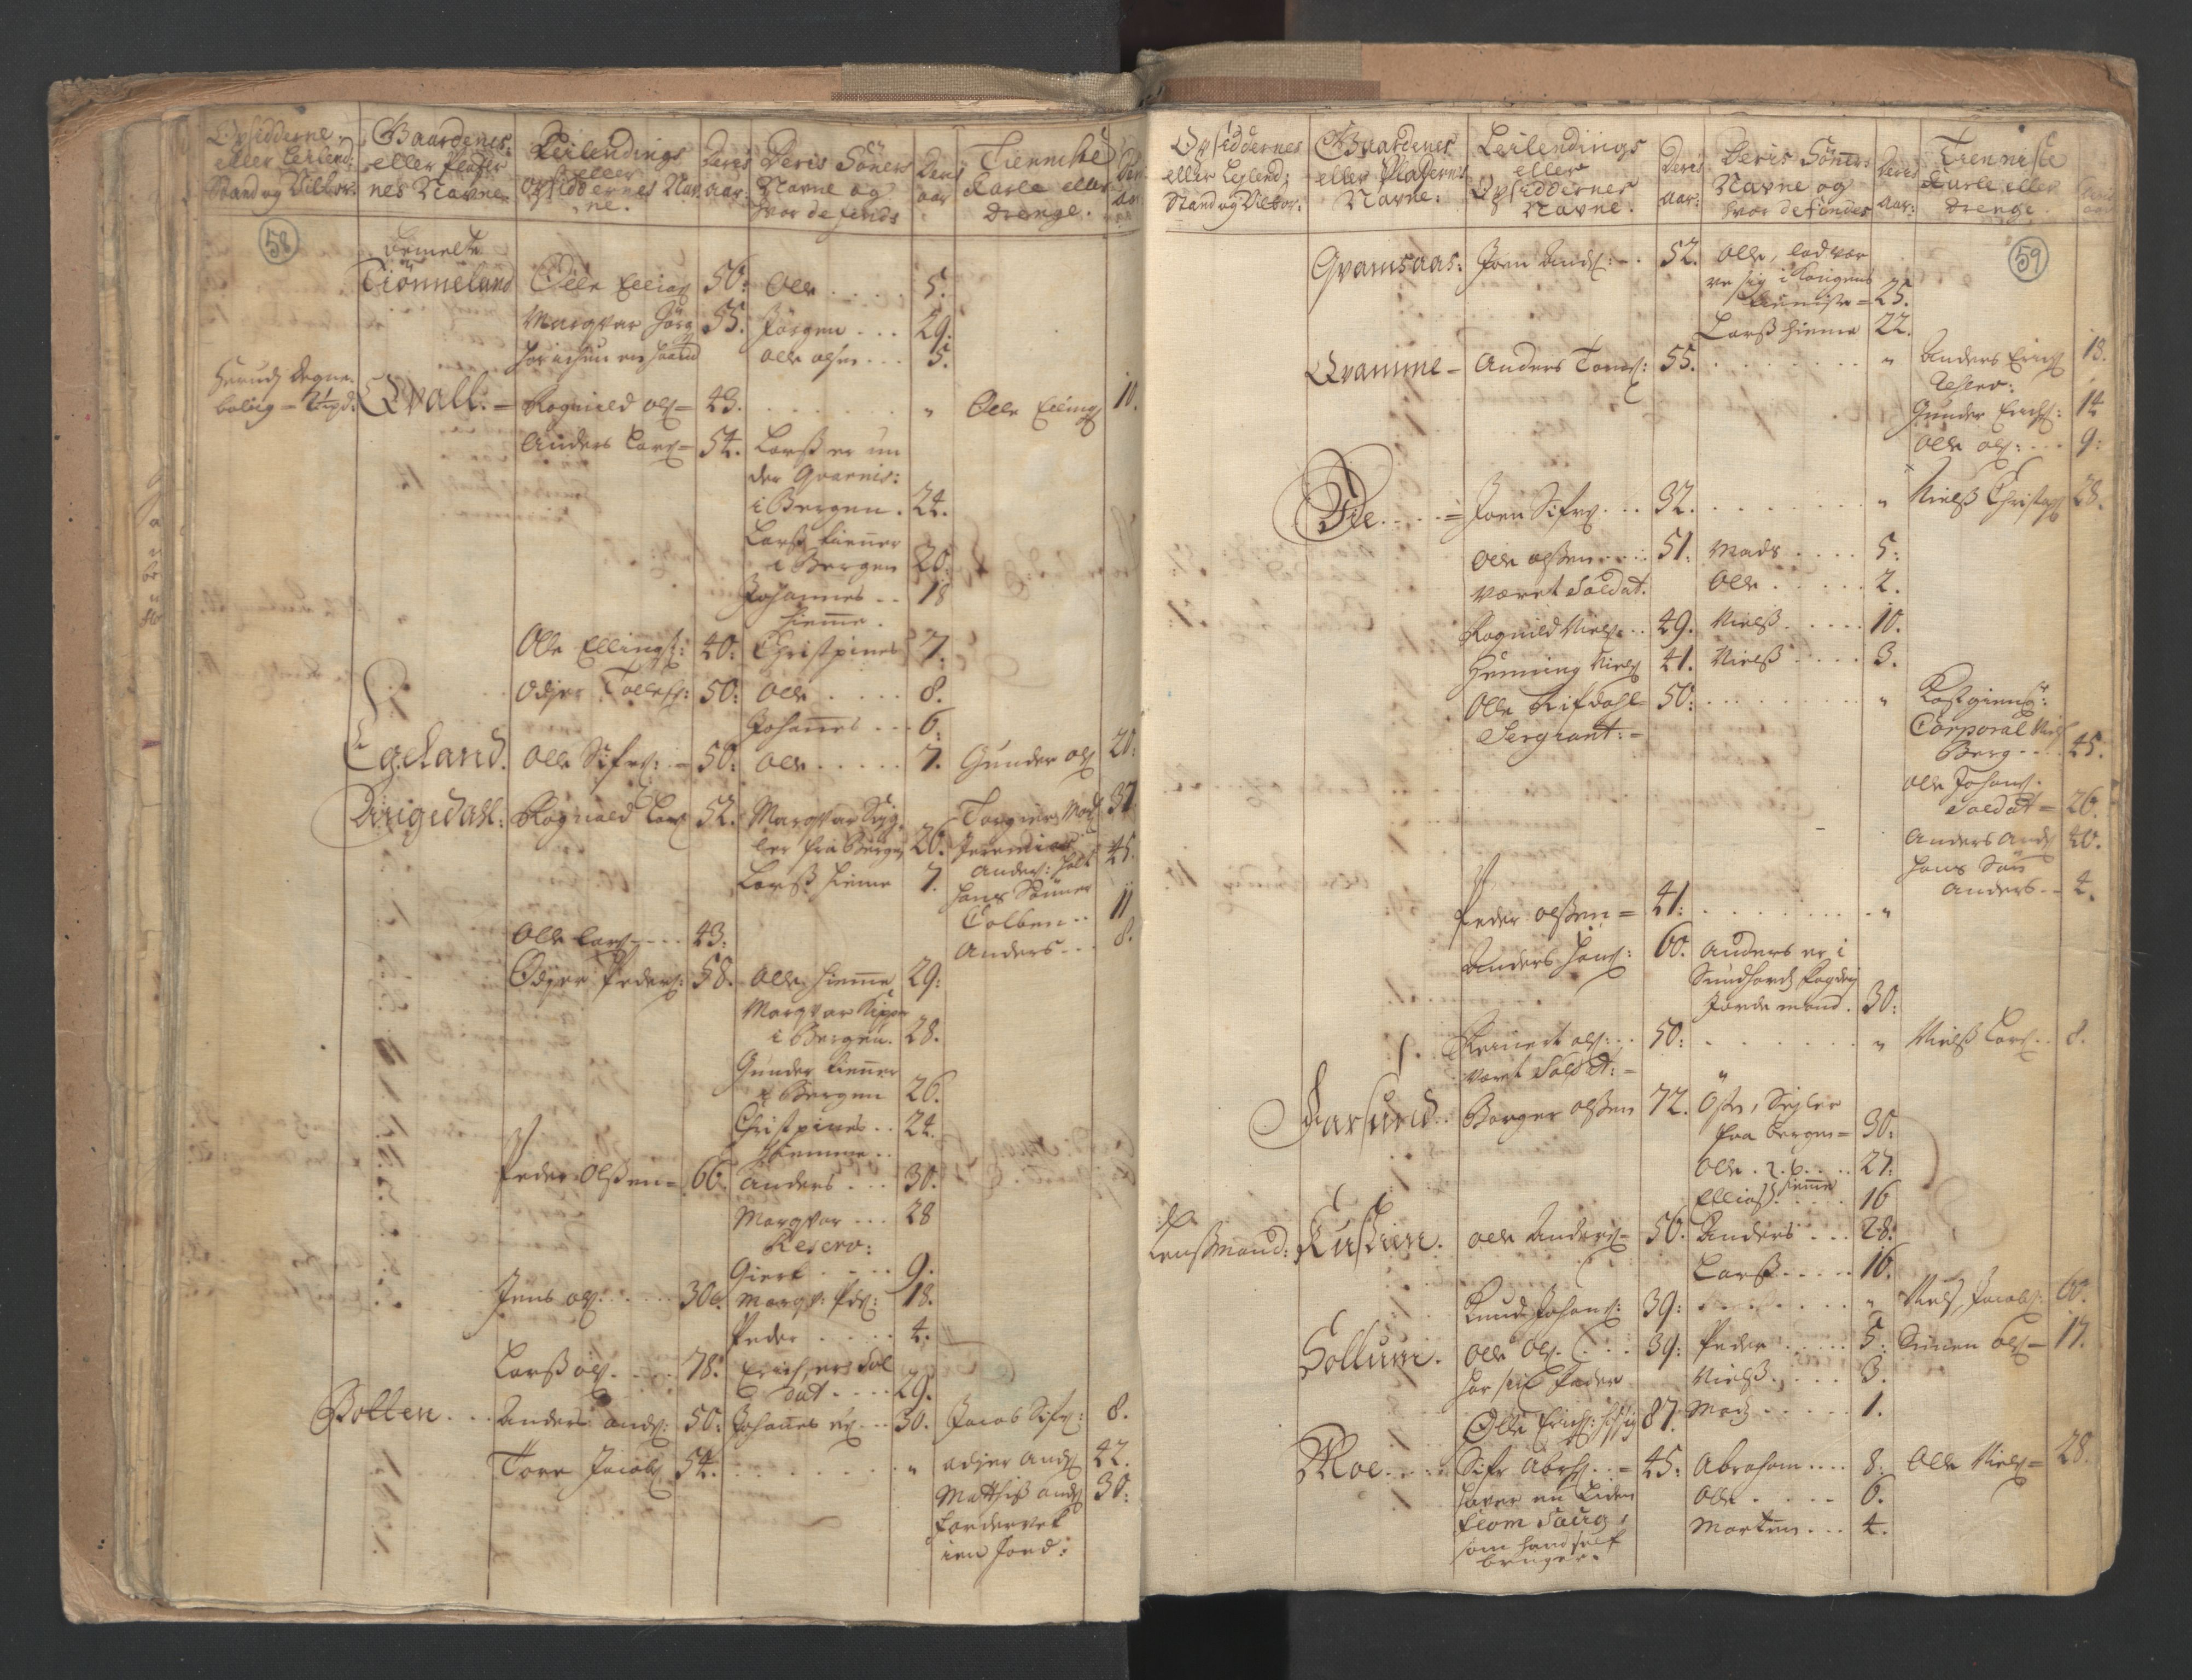 RA, Census (manntall) 1701, no. 9: Sunnfjord fogderi, Nordfjord fogderi and Svanø birk, 1701, p. 58-59